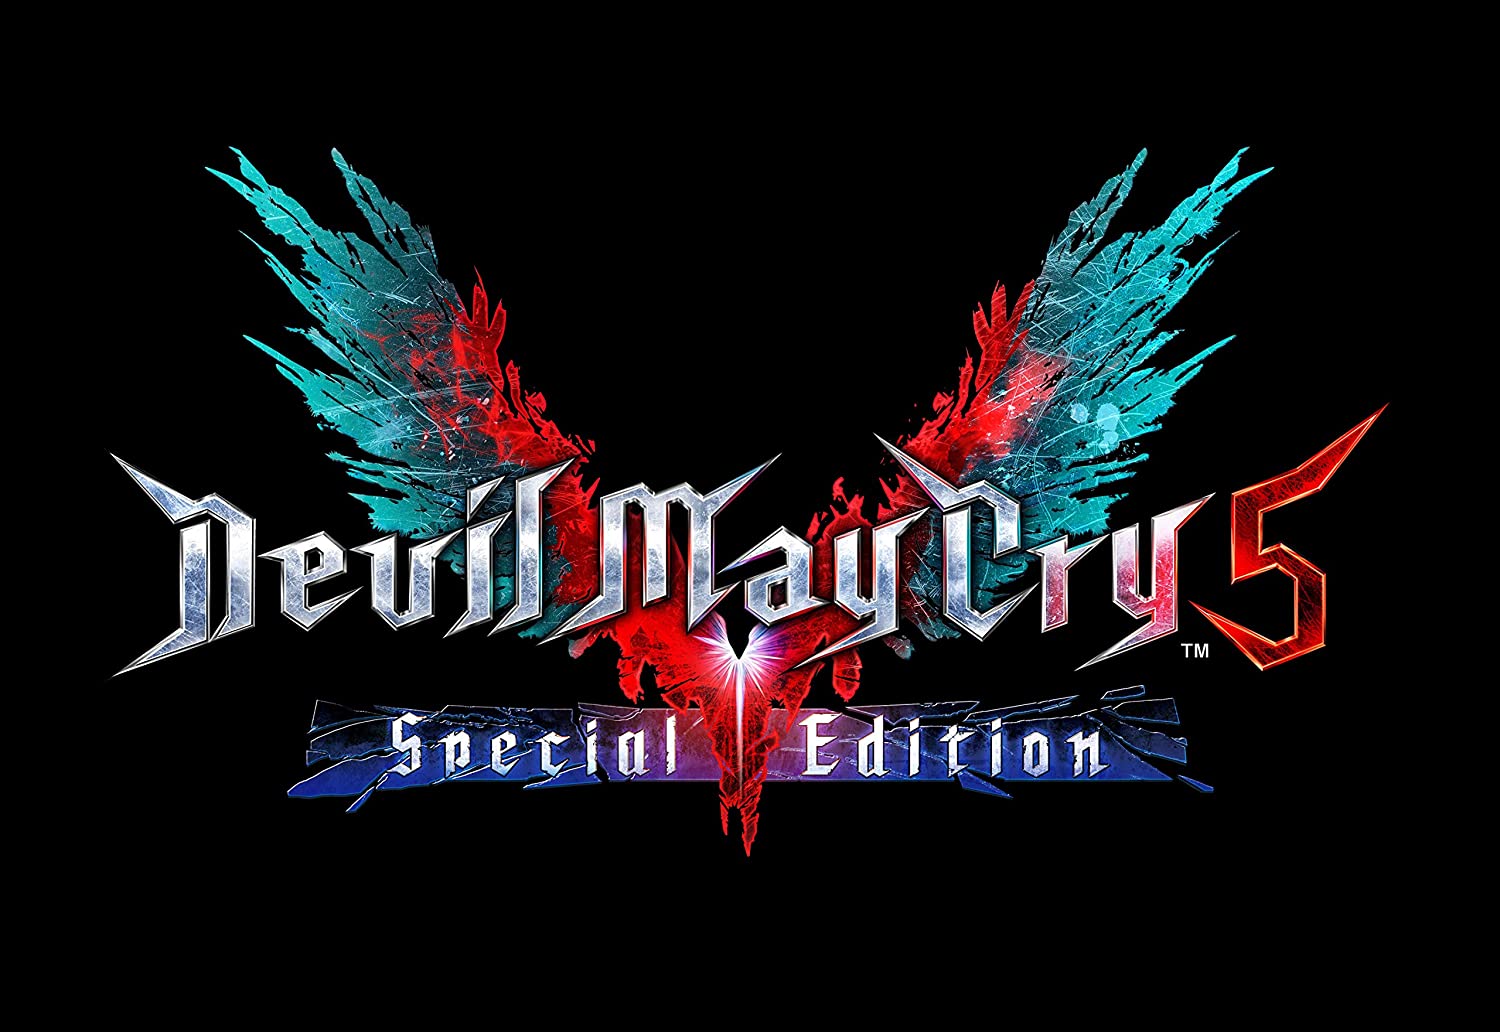 Devil-May-Cry-5-Special-Edition-scene-a-bazaar-bazaar